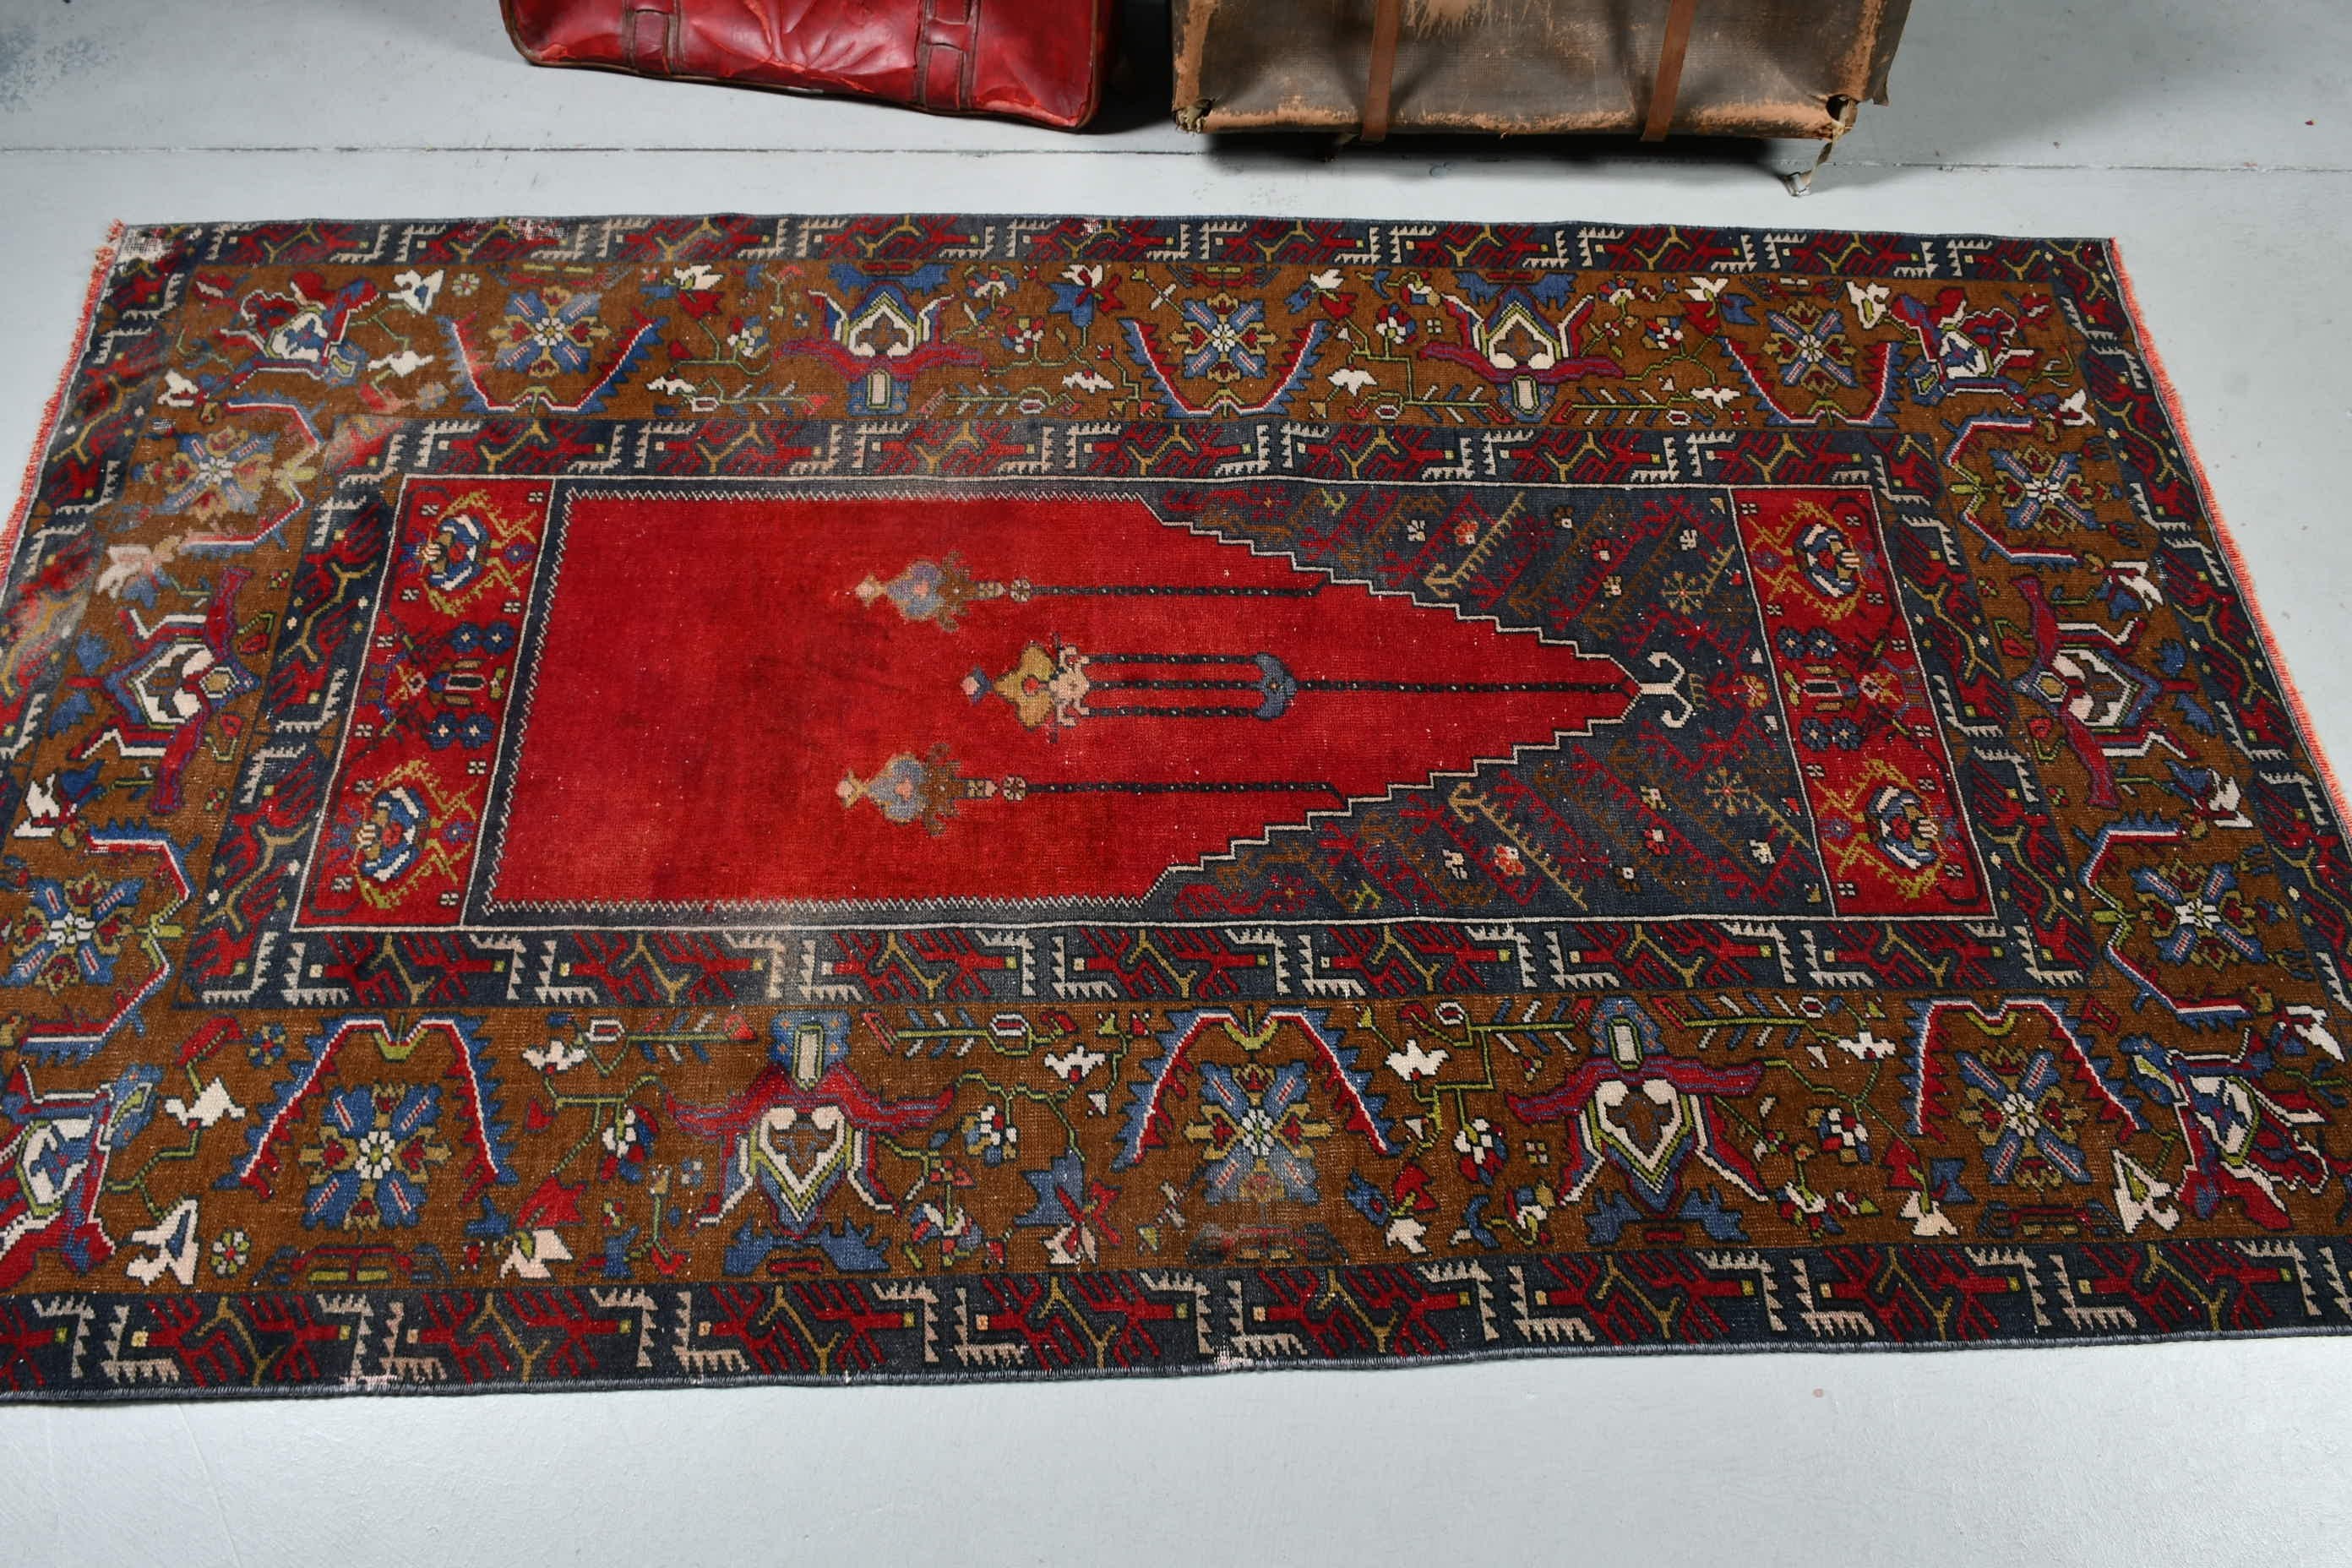 Vintage Rug, Organic Rug, Living Room Rugs, Red Moroccan Rugs, Home Decor Rugs, Turkish Rugs, Bedroom Rug, Floor Rugs, 3.7x6.5 ft Area Rug